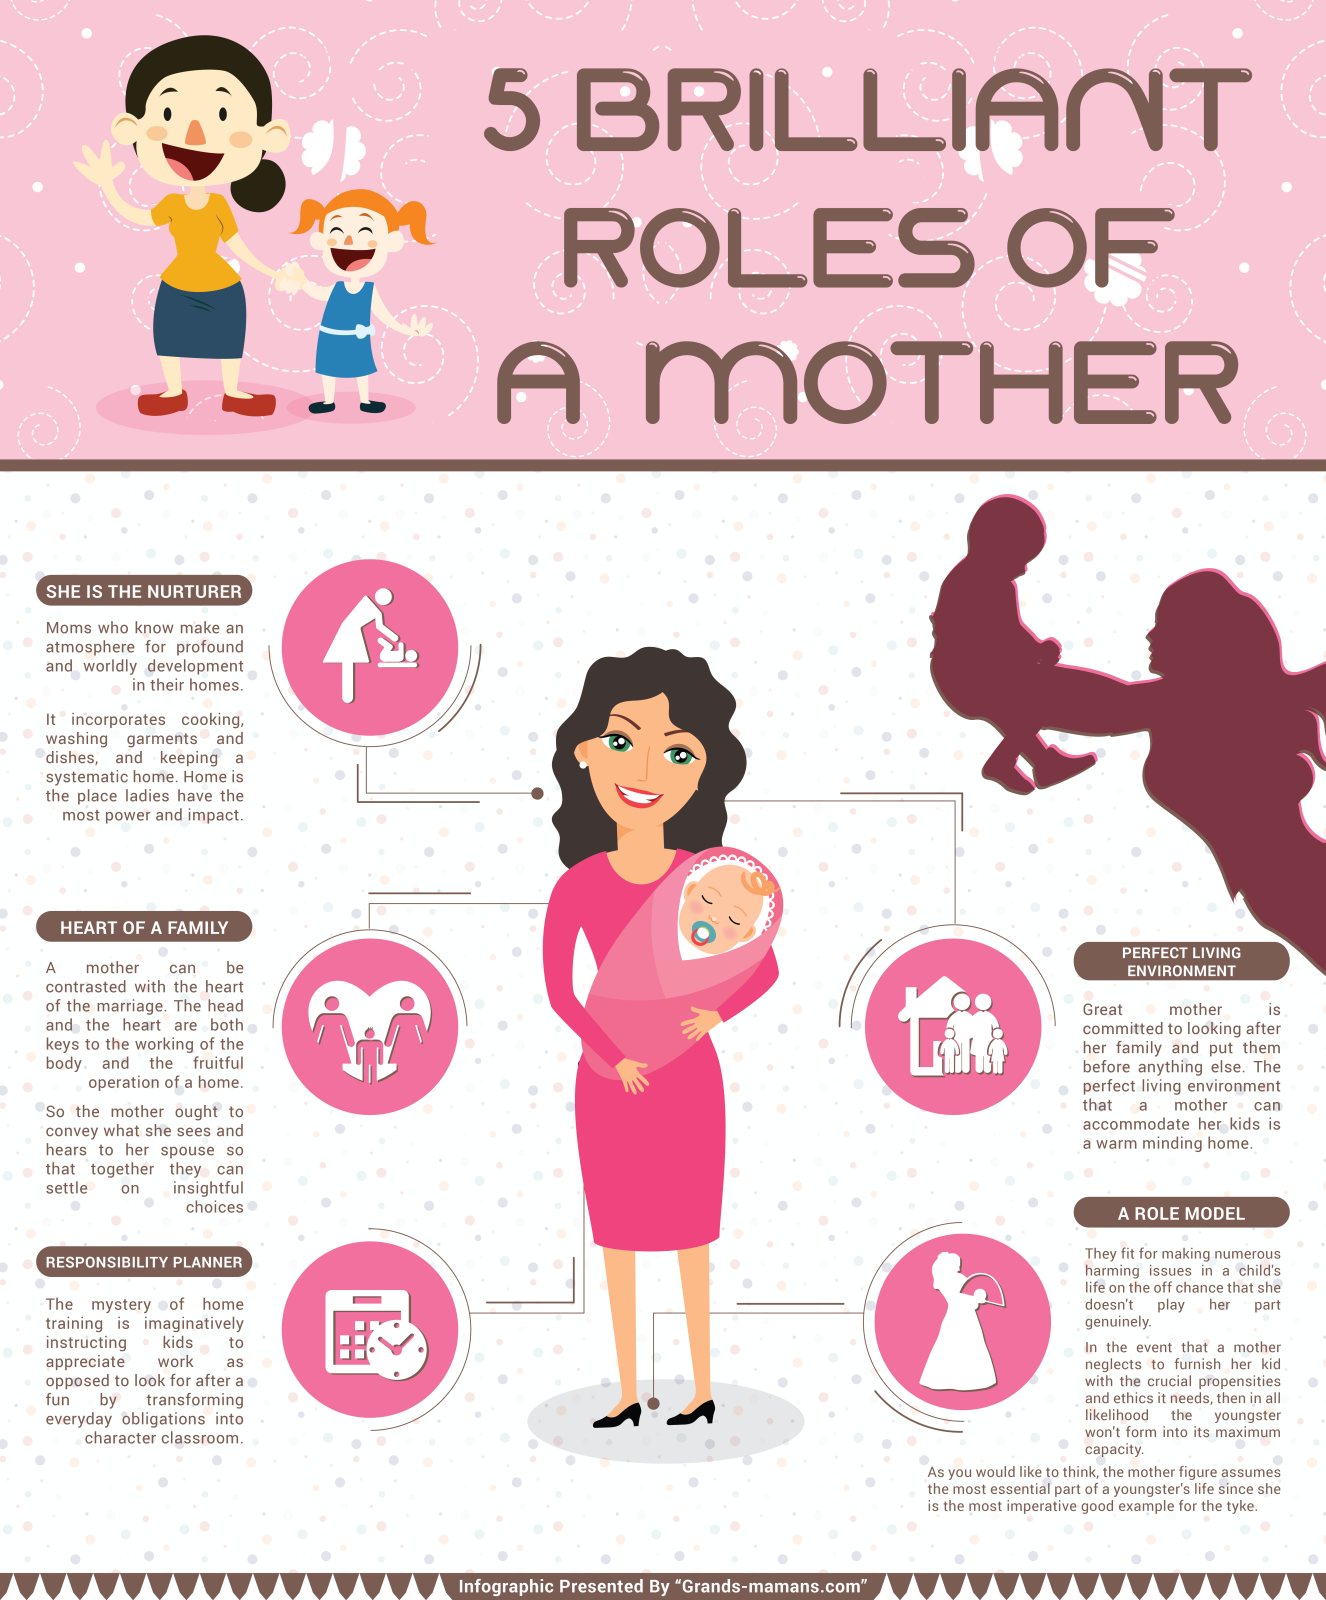 Infographic Explained grands-mamans.com